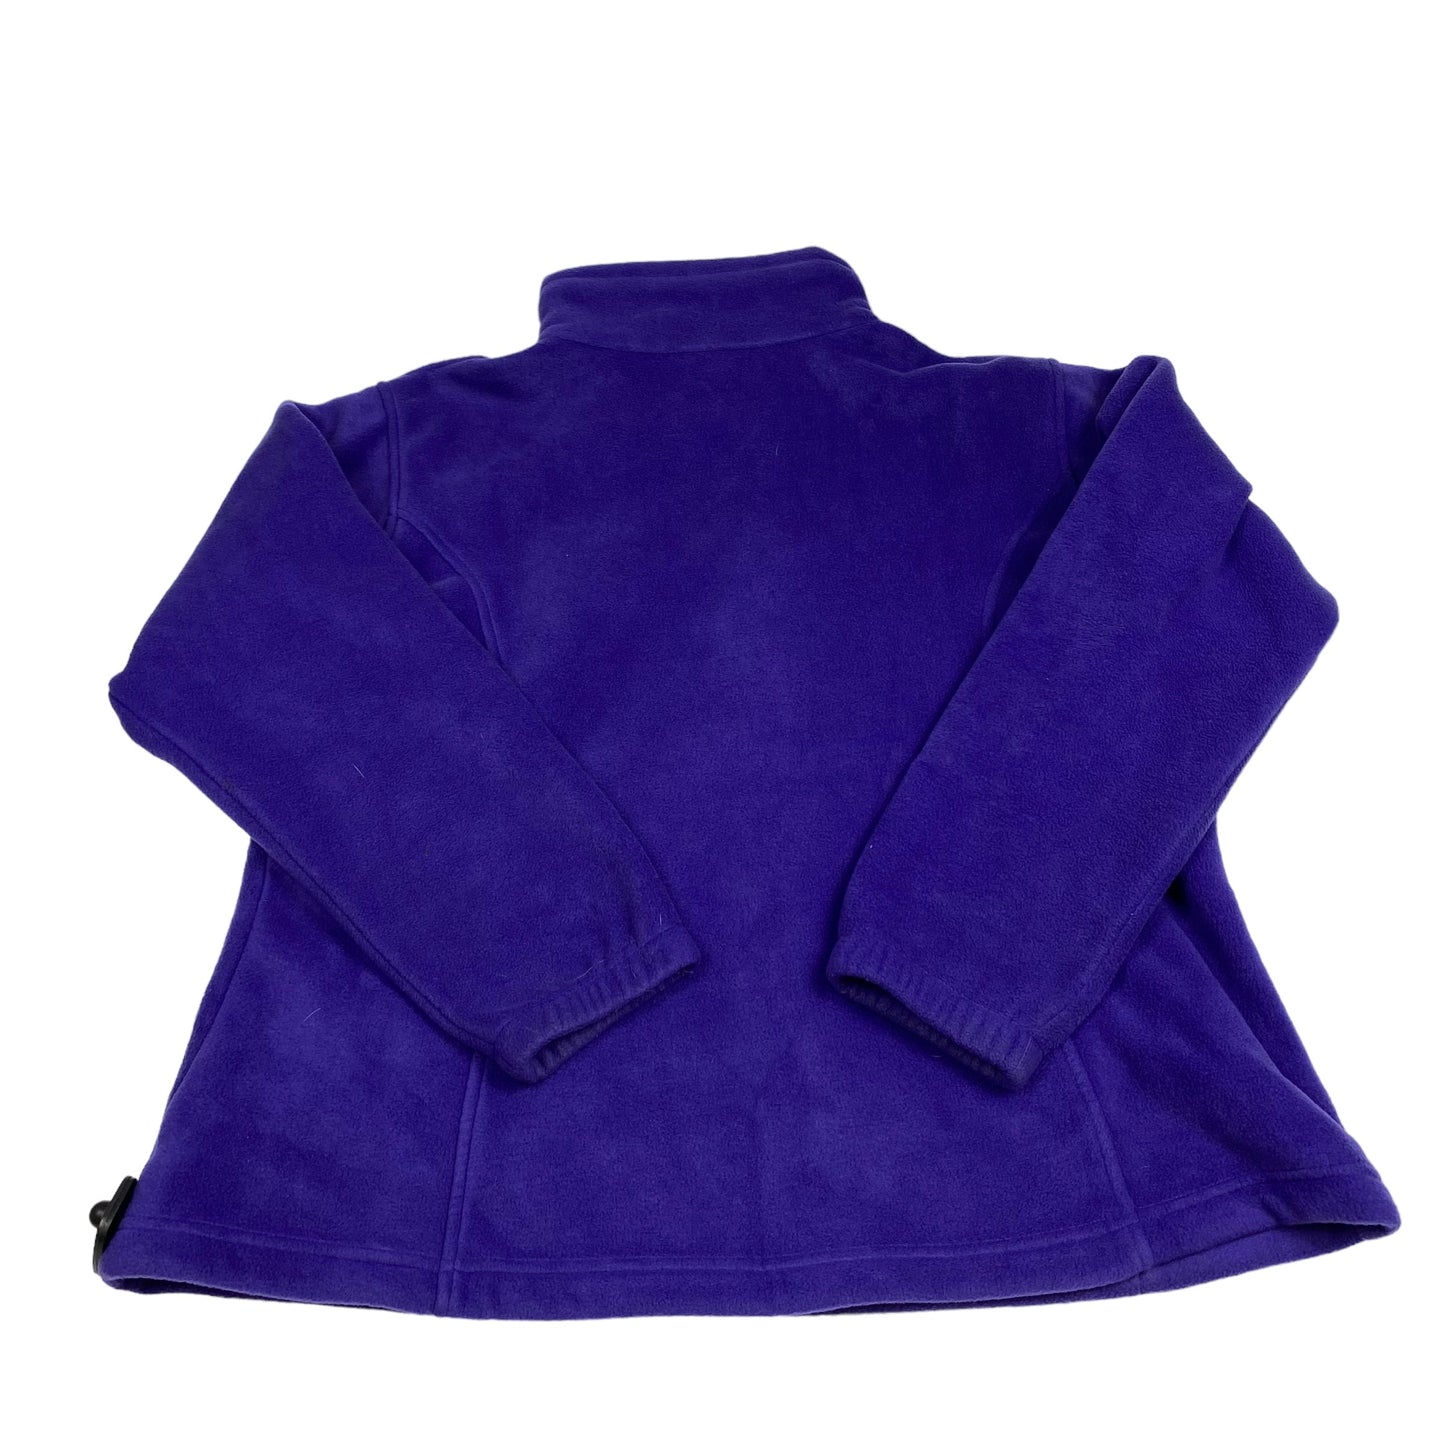 Jacket Fleece By Columbia  Size: 2x